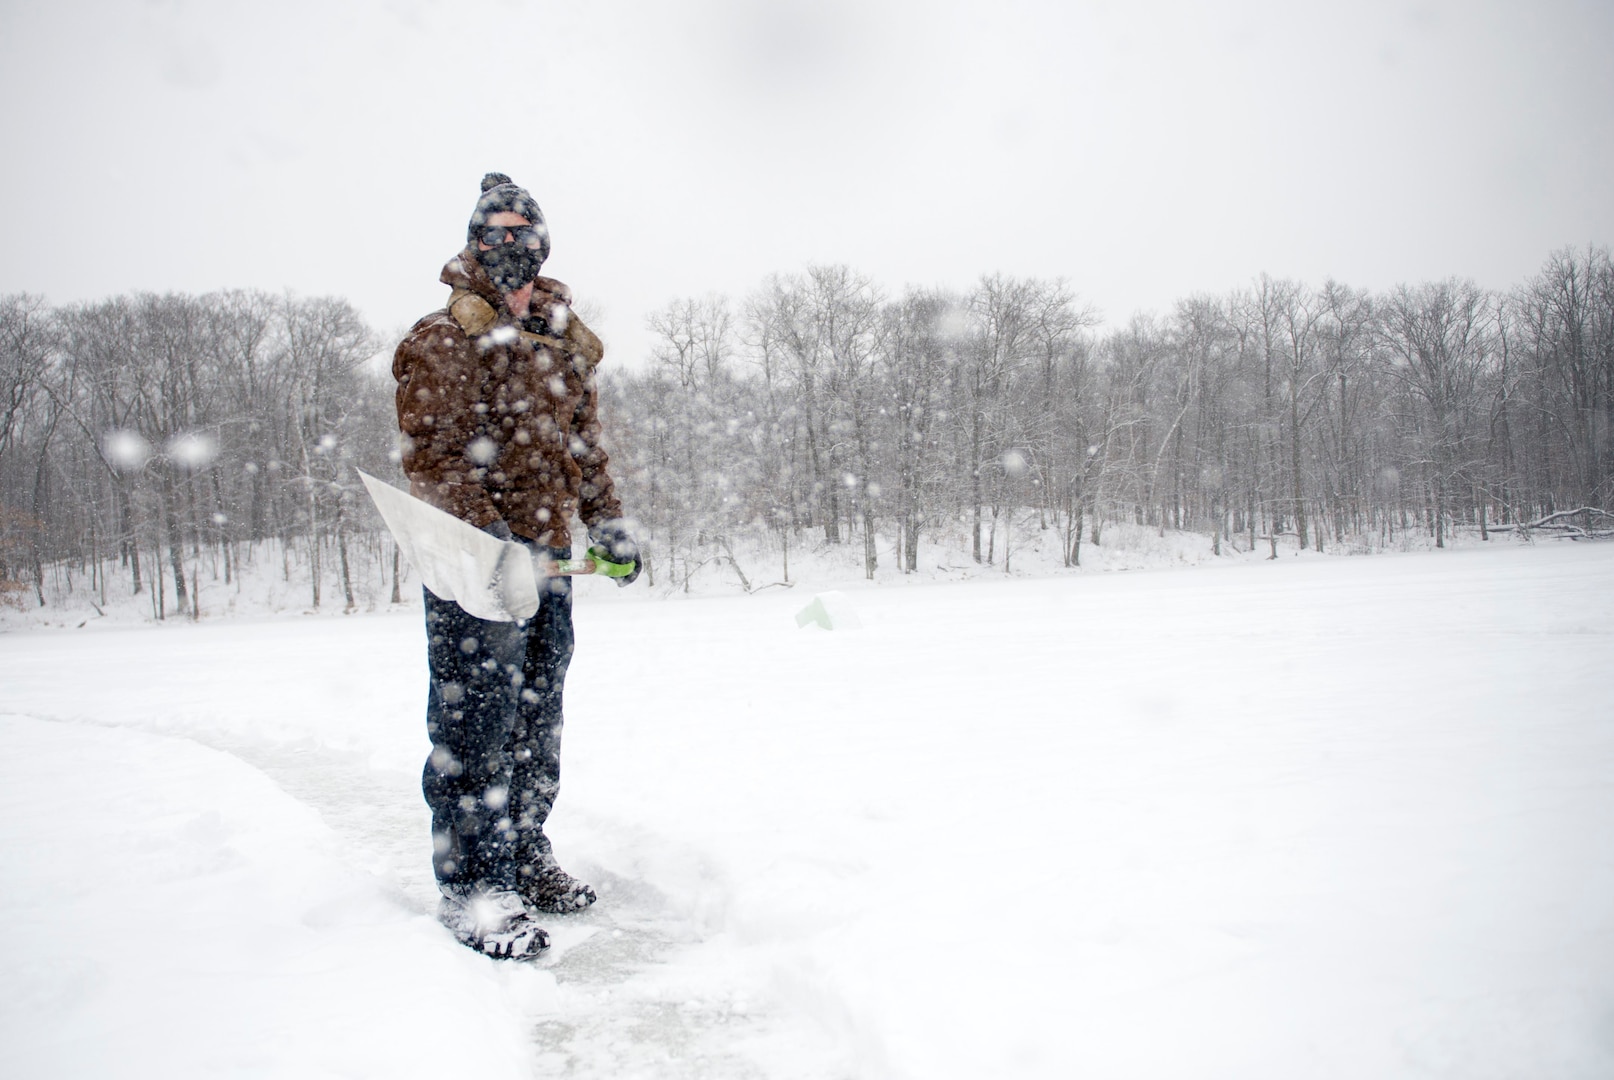 Service member in winter gear shovels snow